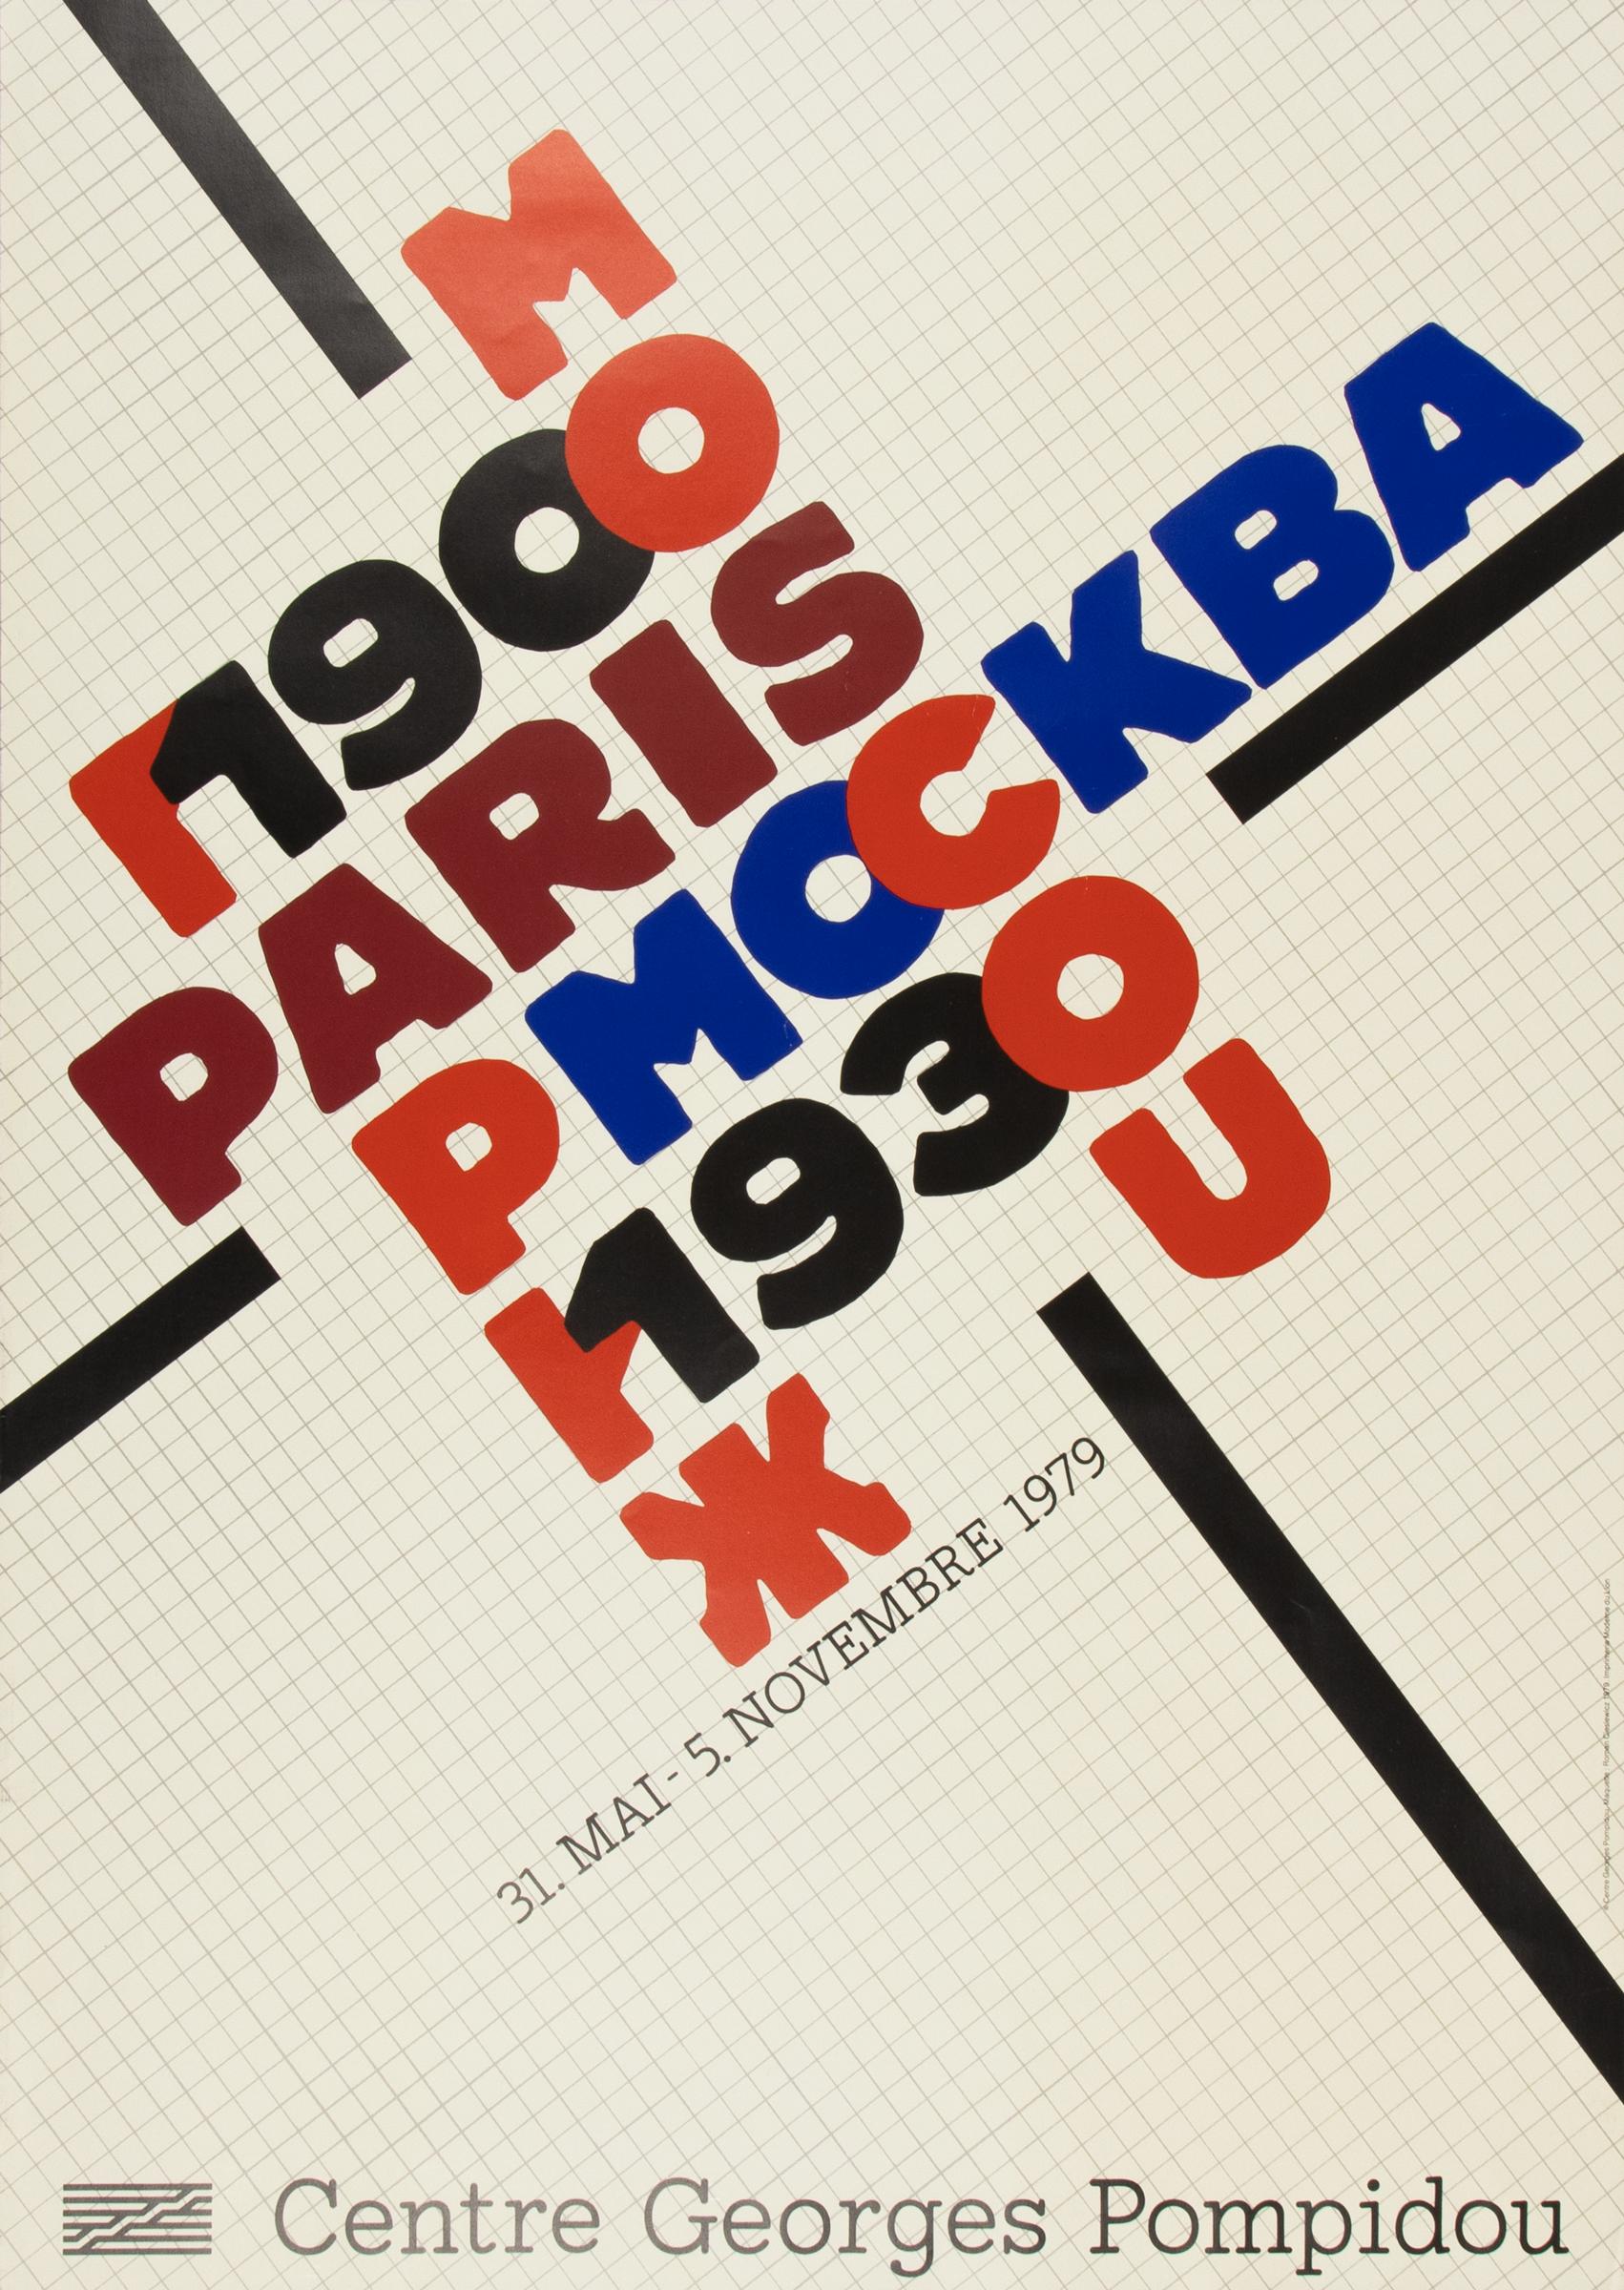 Paris-Moscou 1900-1930, Centre Pompidou: Original Exhibition Poster from 1979